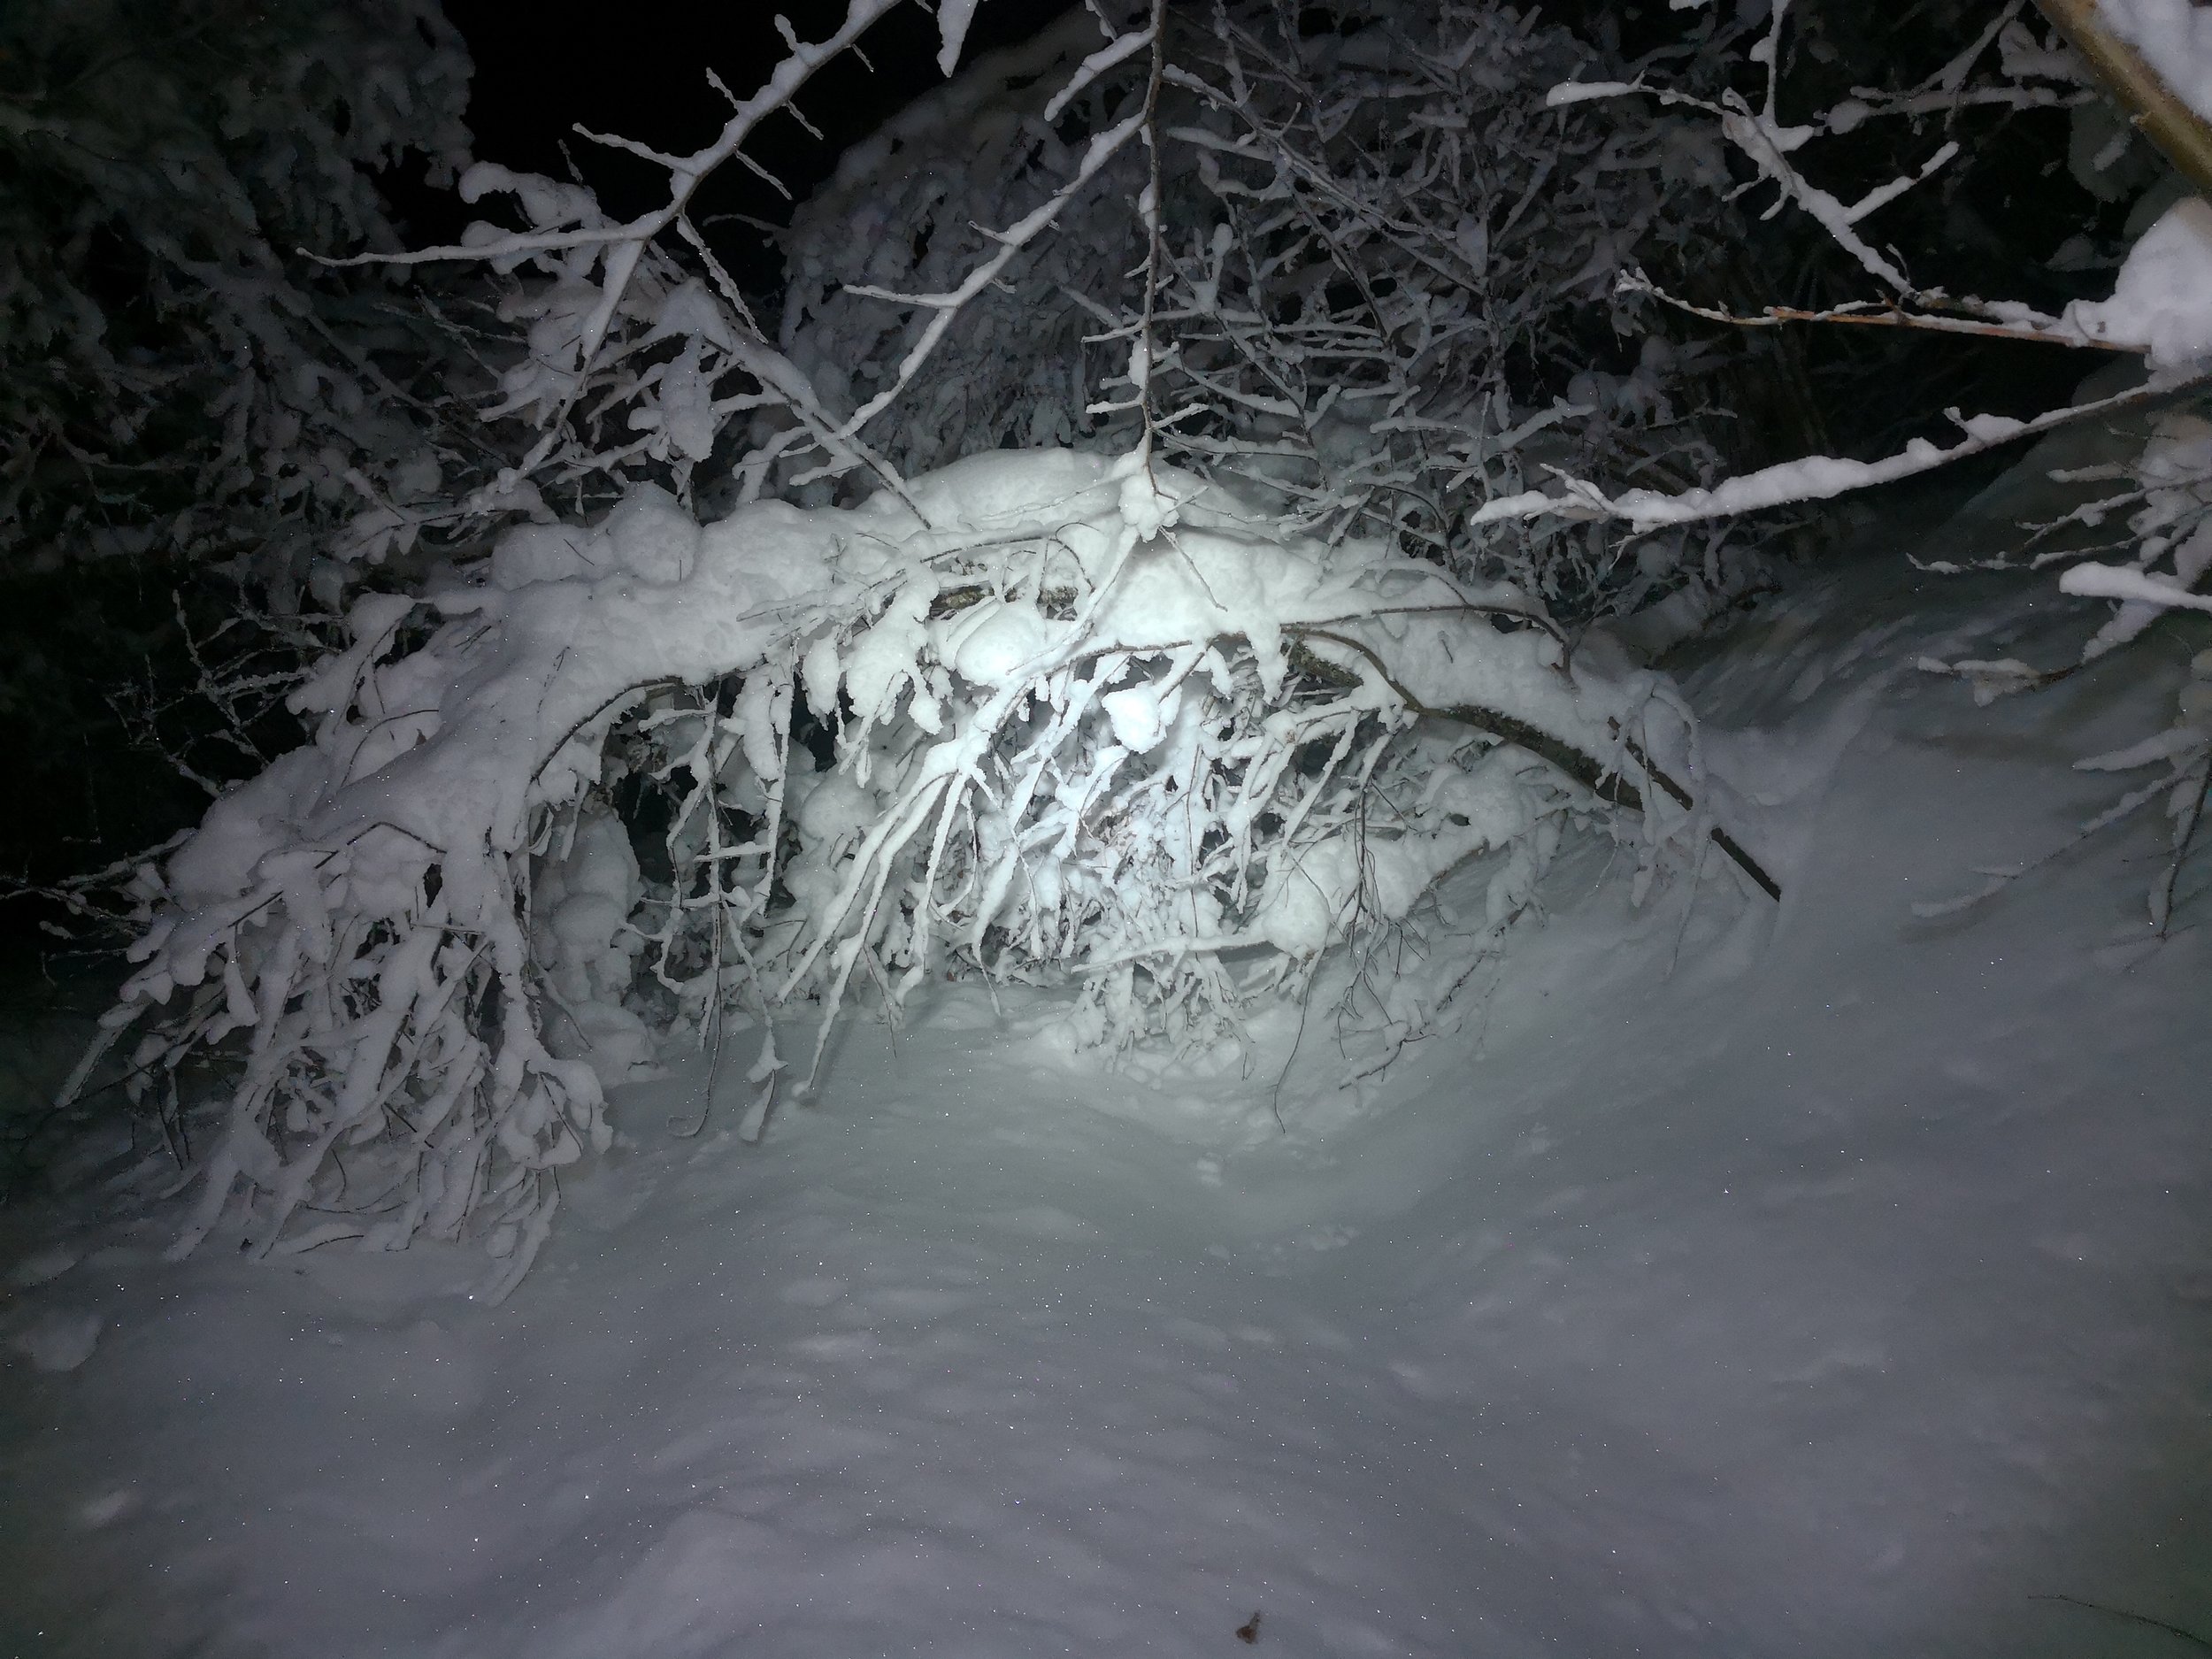   Sto opp kl. 5.45 i dag, gikk innover i skogen mot bua mi. Det var nesten som å gå i en snøjungel, da trærne hadde veltet seg over veien av den tunge snøen.     2018 Jan  